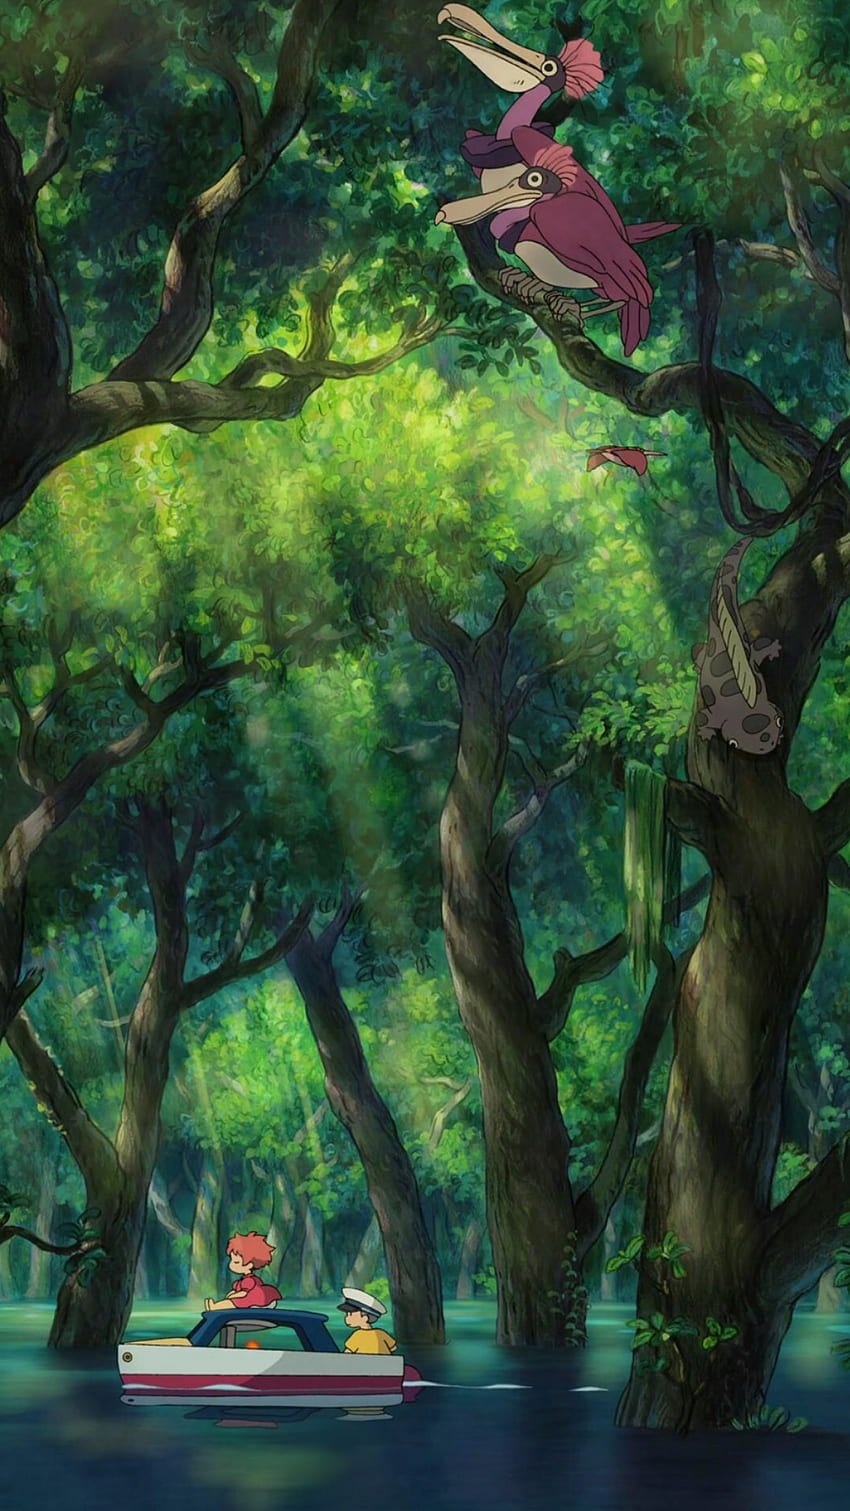 Teléfono Ponyo en el acantilado junto al mar - Studio Ghibli, Miyazaki fondo de pantalla del teléfono